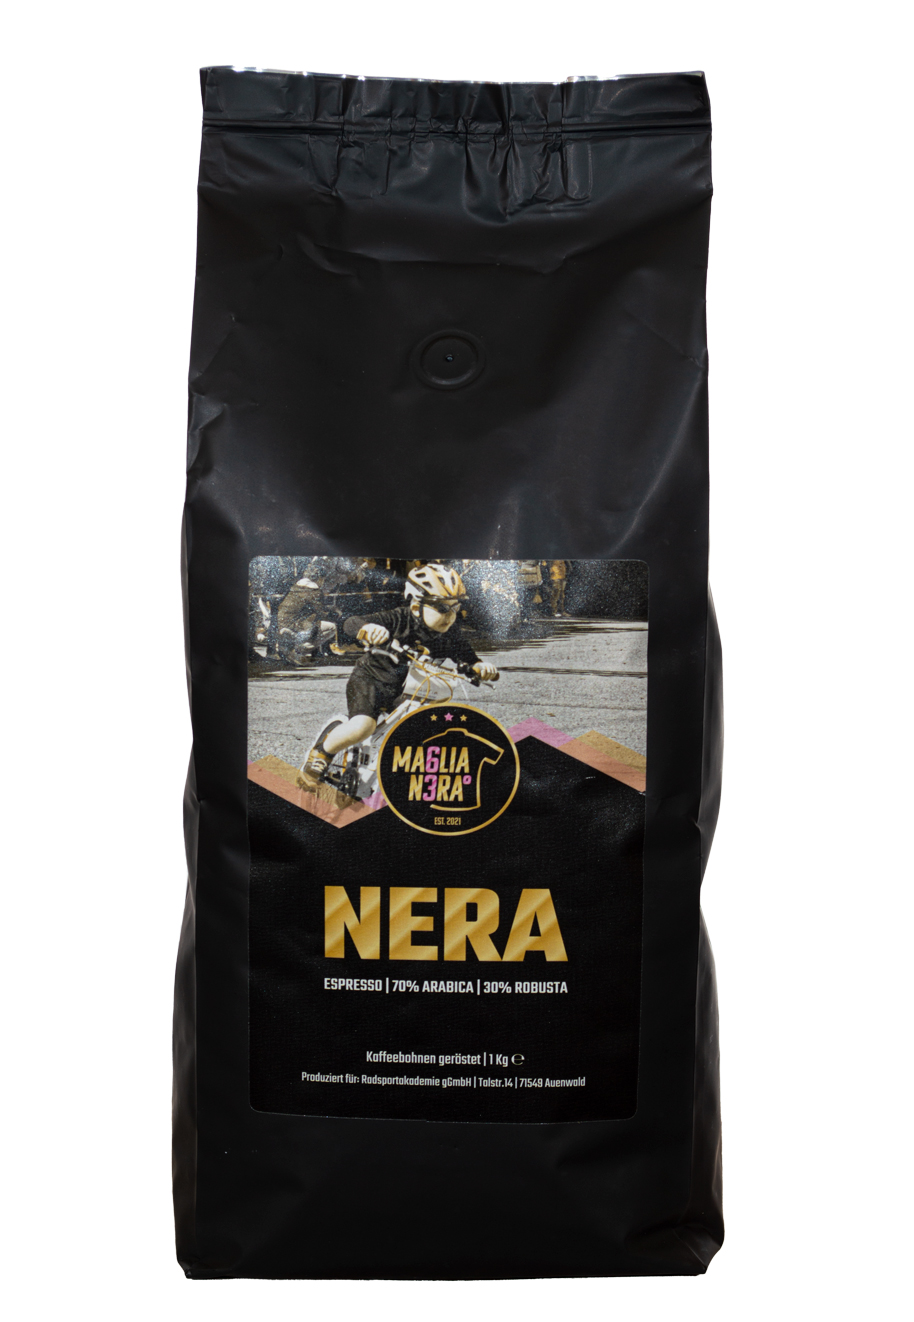 MA6LIA N3RA° Coffee / 1000 g Bohne  Nera